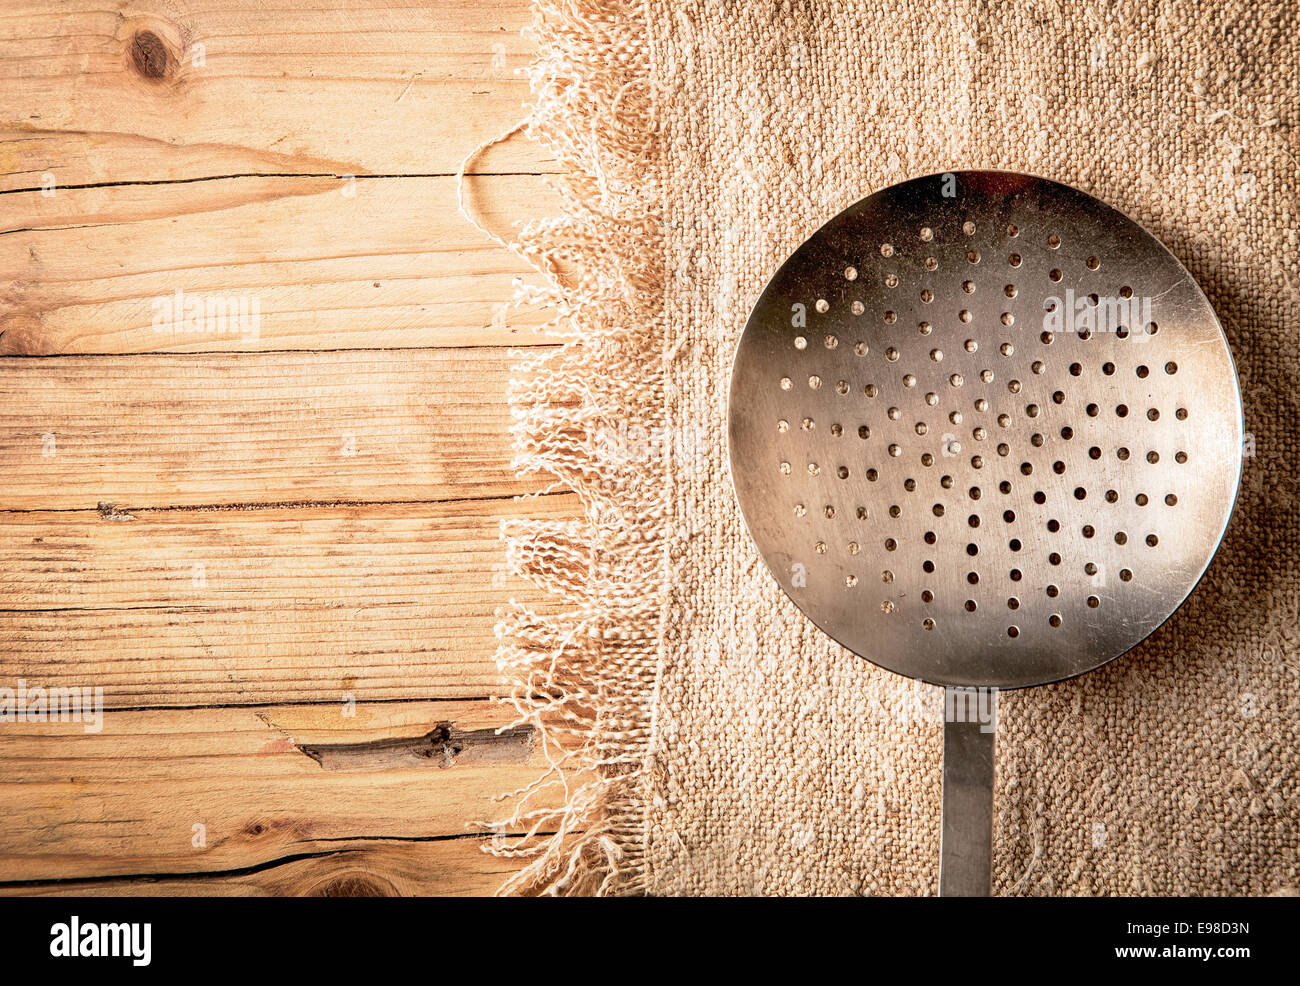 Ancienne passoire métallique circulaire, tamis ou tamis perforé avec trous pour essorer légumes tout en préparant un repas dans une cuisine de campagne sur un fond de bois texturés avec copyspace Banque D'Images